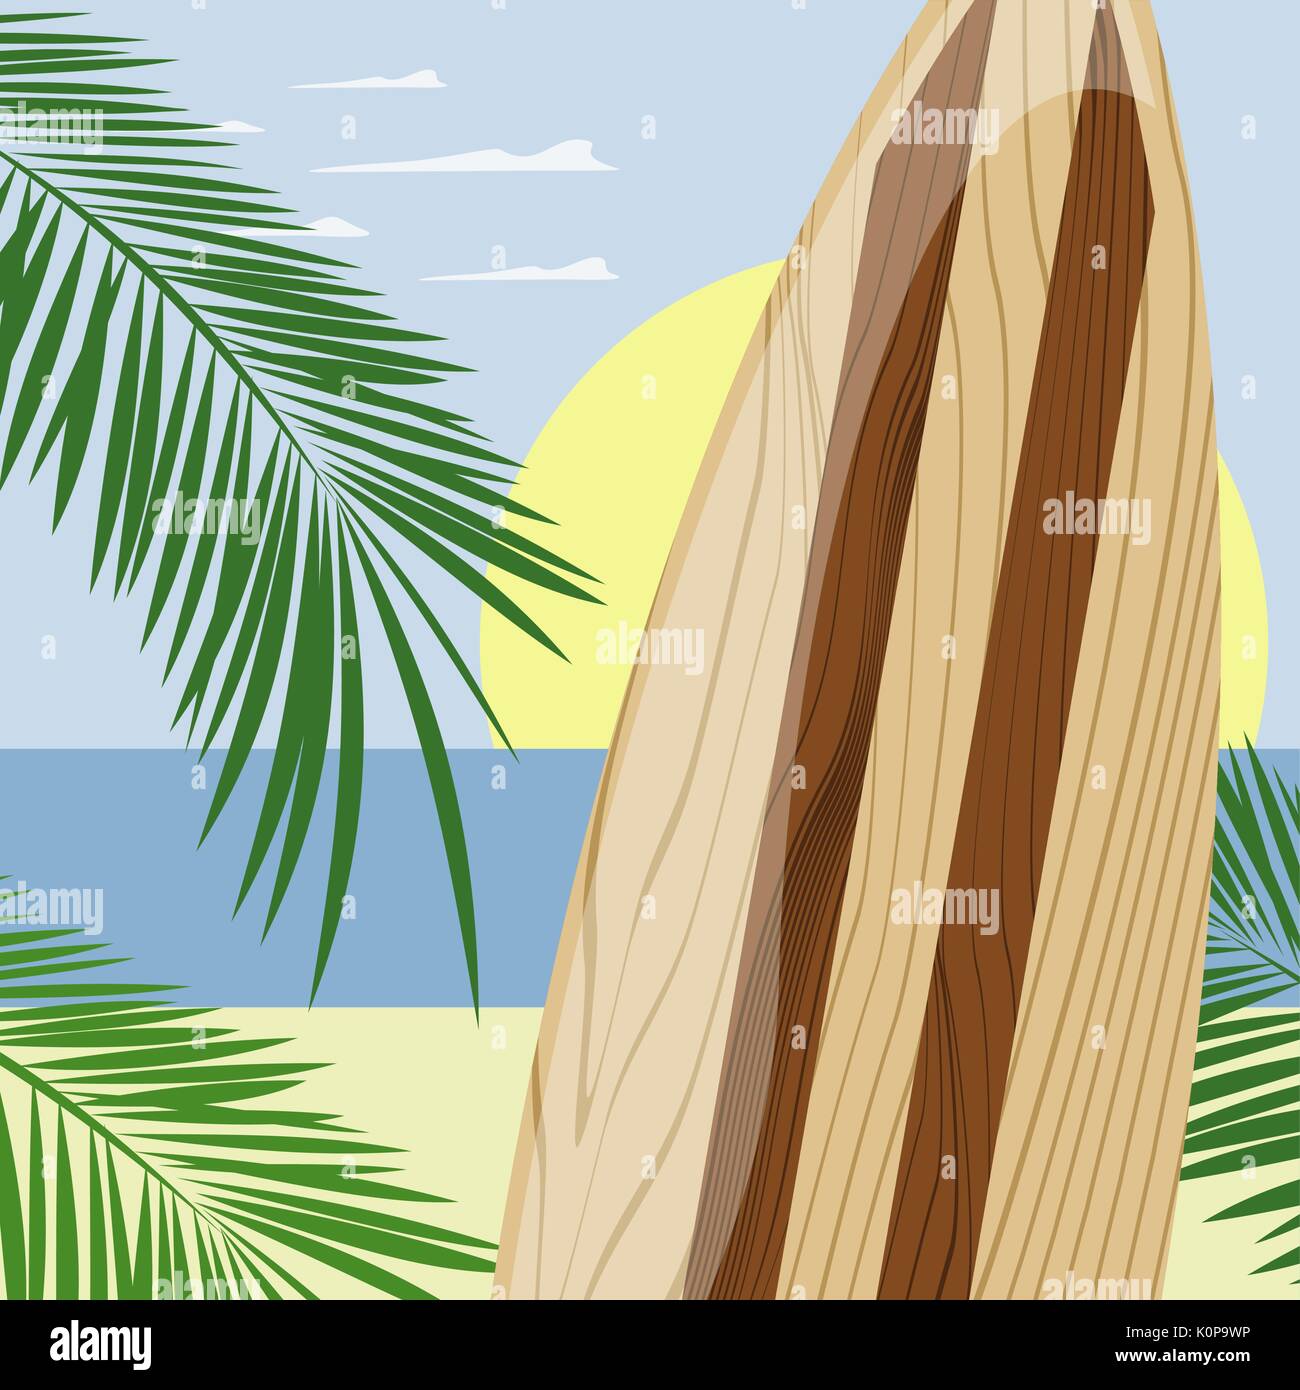 Las tablas de surf en la playa de madera, fondo formato vectorial muy fácil de editar, sin degradados, sólo colores sólidos Ilustración del Vector